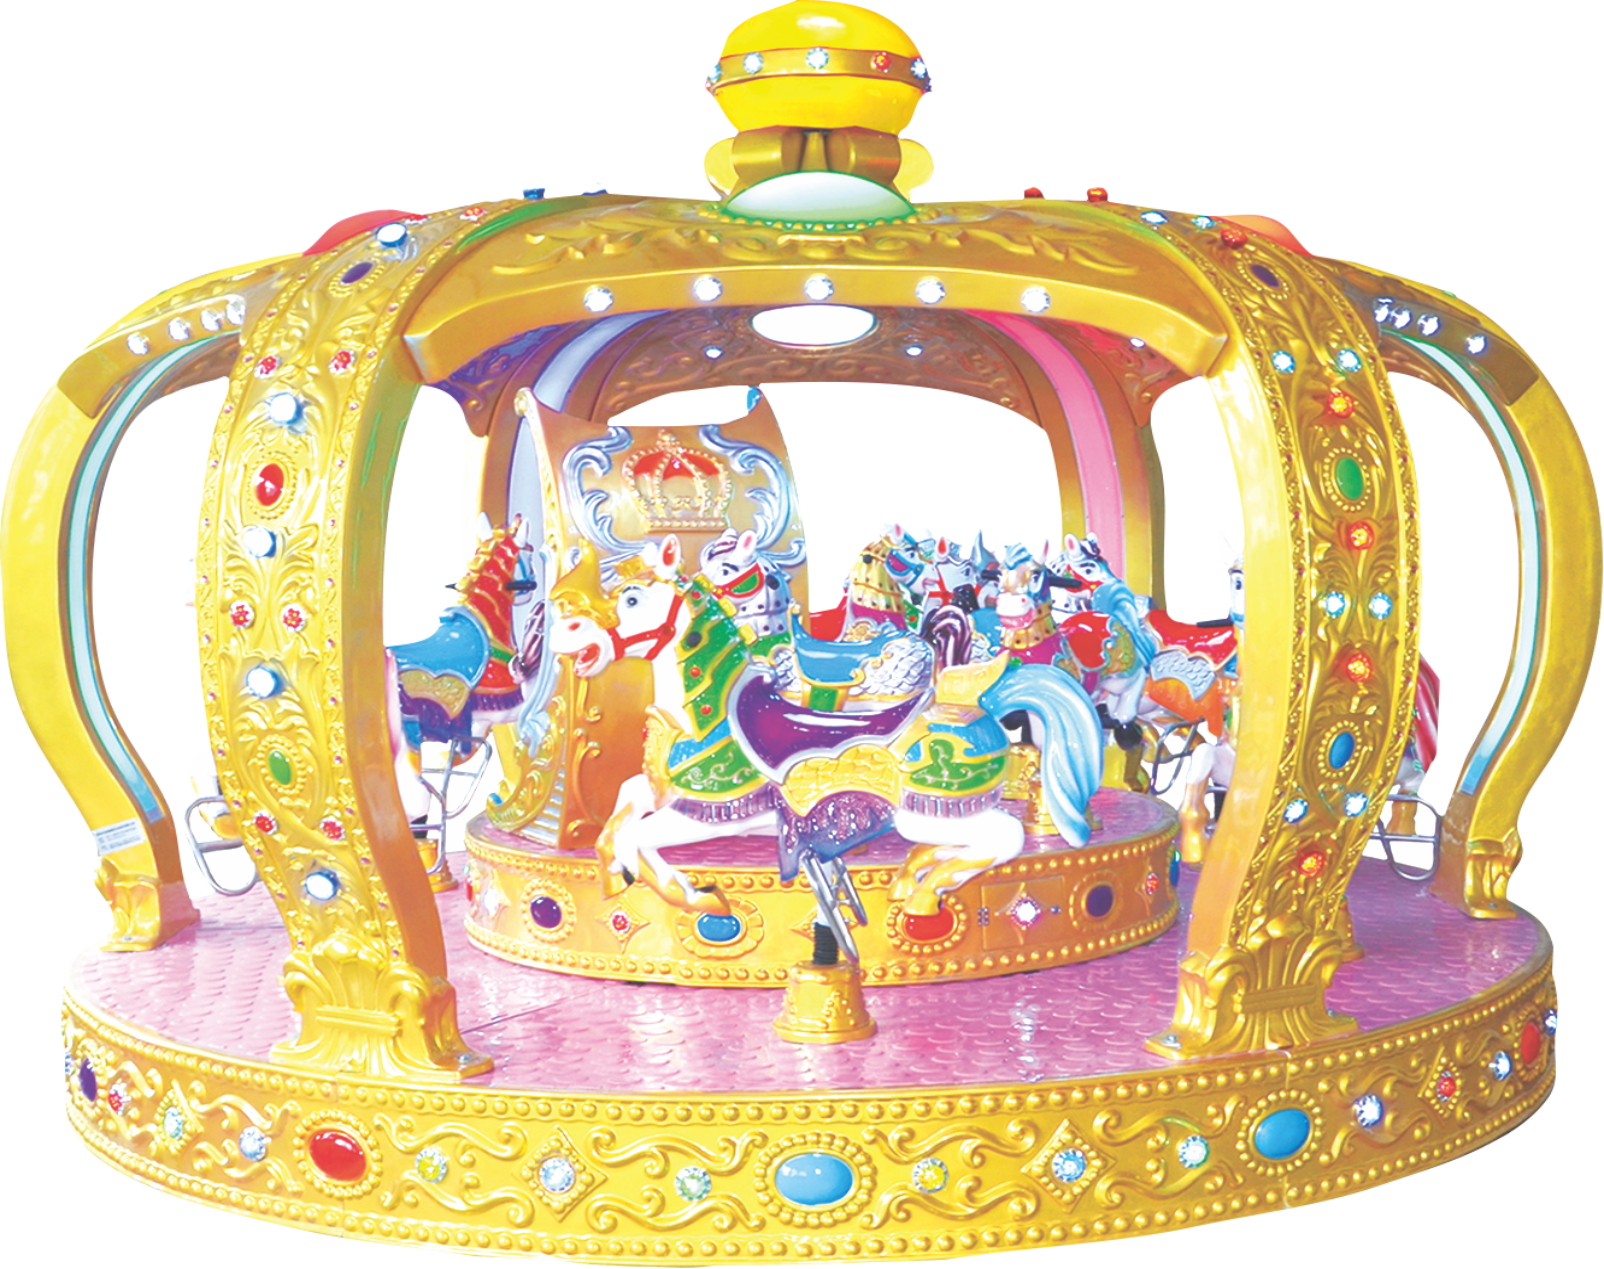 神童游乐新款儿童皇冠转马图片